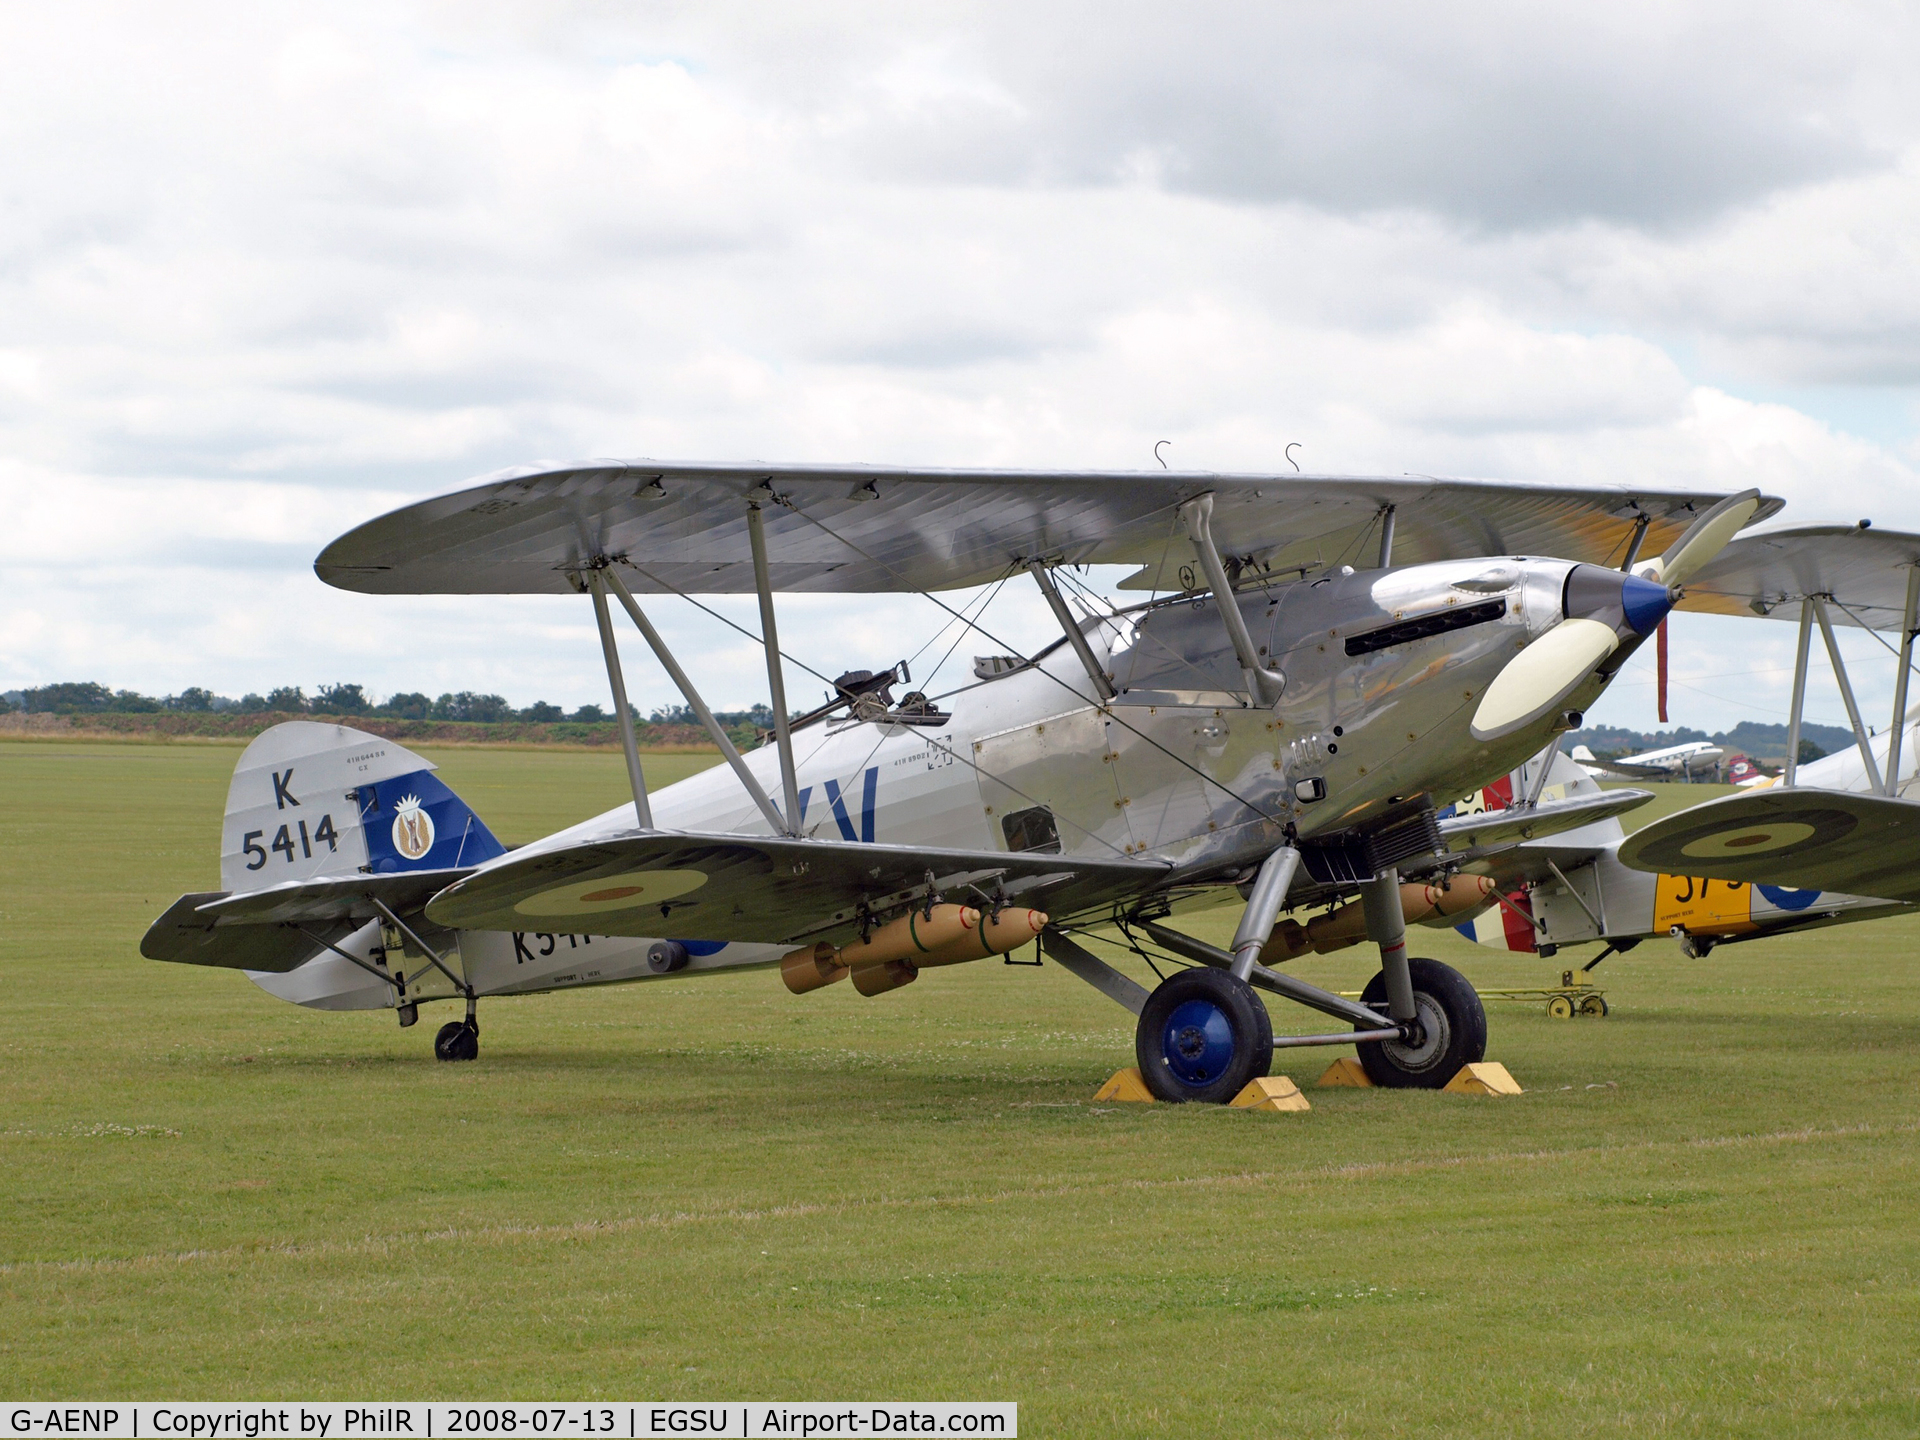 G-AENP, 1935 Hawker Hind C/N 41H/81902, Hawker Hind K5414 Flying Legends Duxford